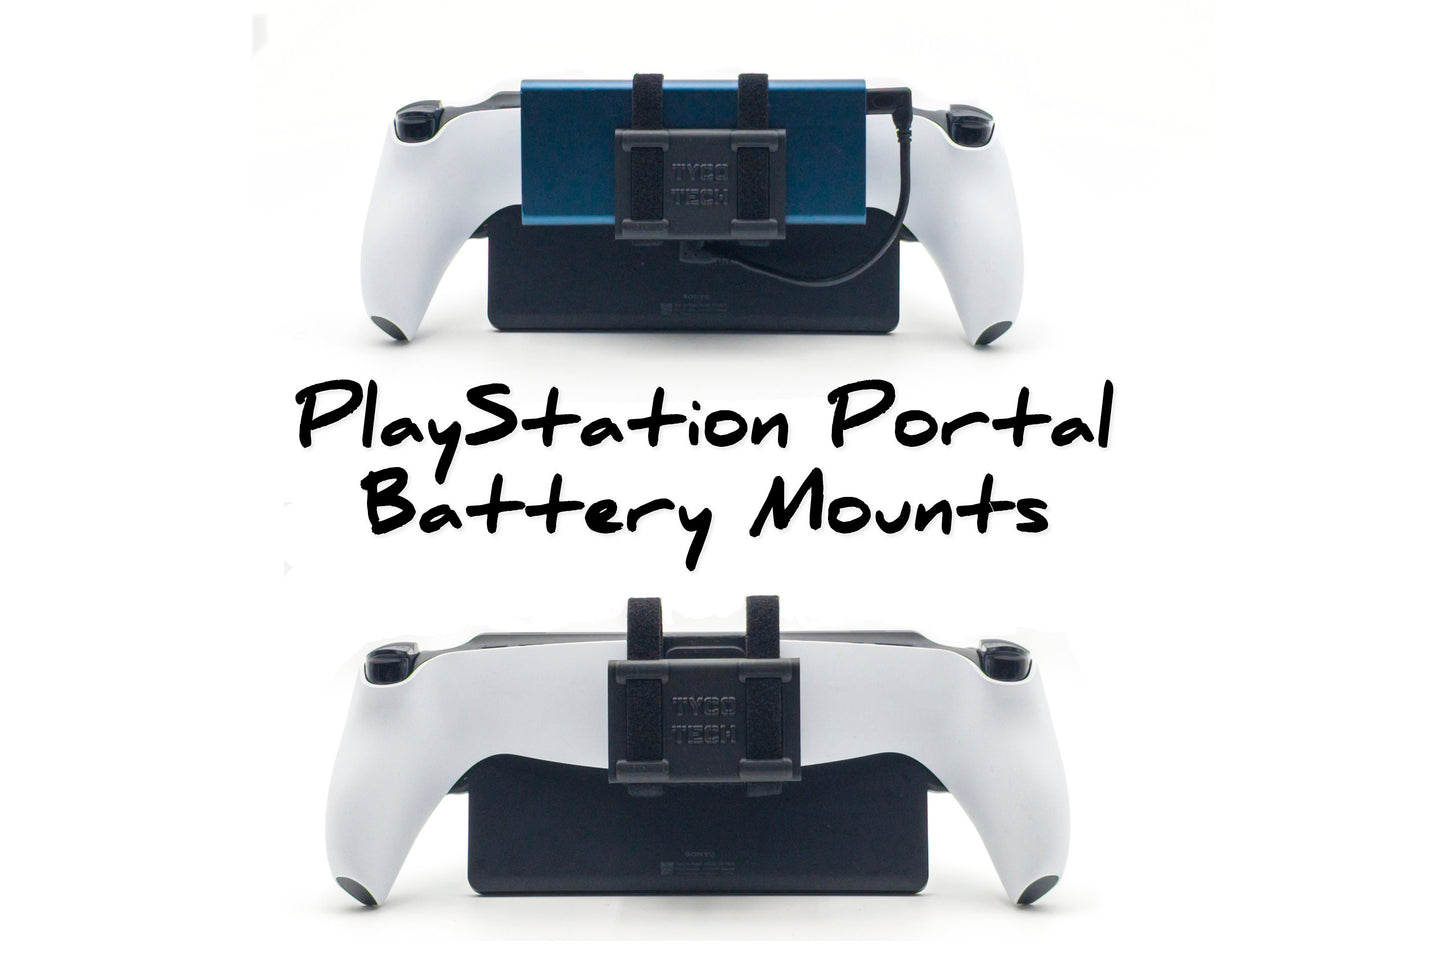 Soportes de batería universales para PlayStation Portal, ¡disponibles en tres tamaños!